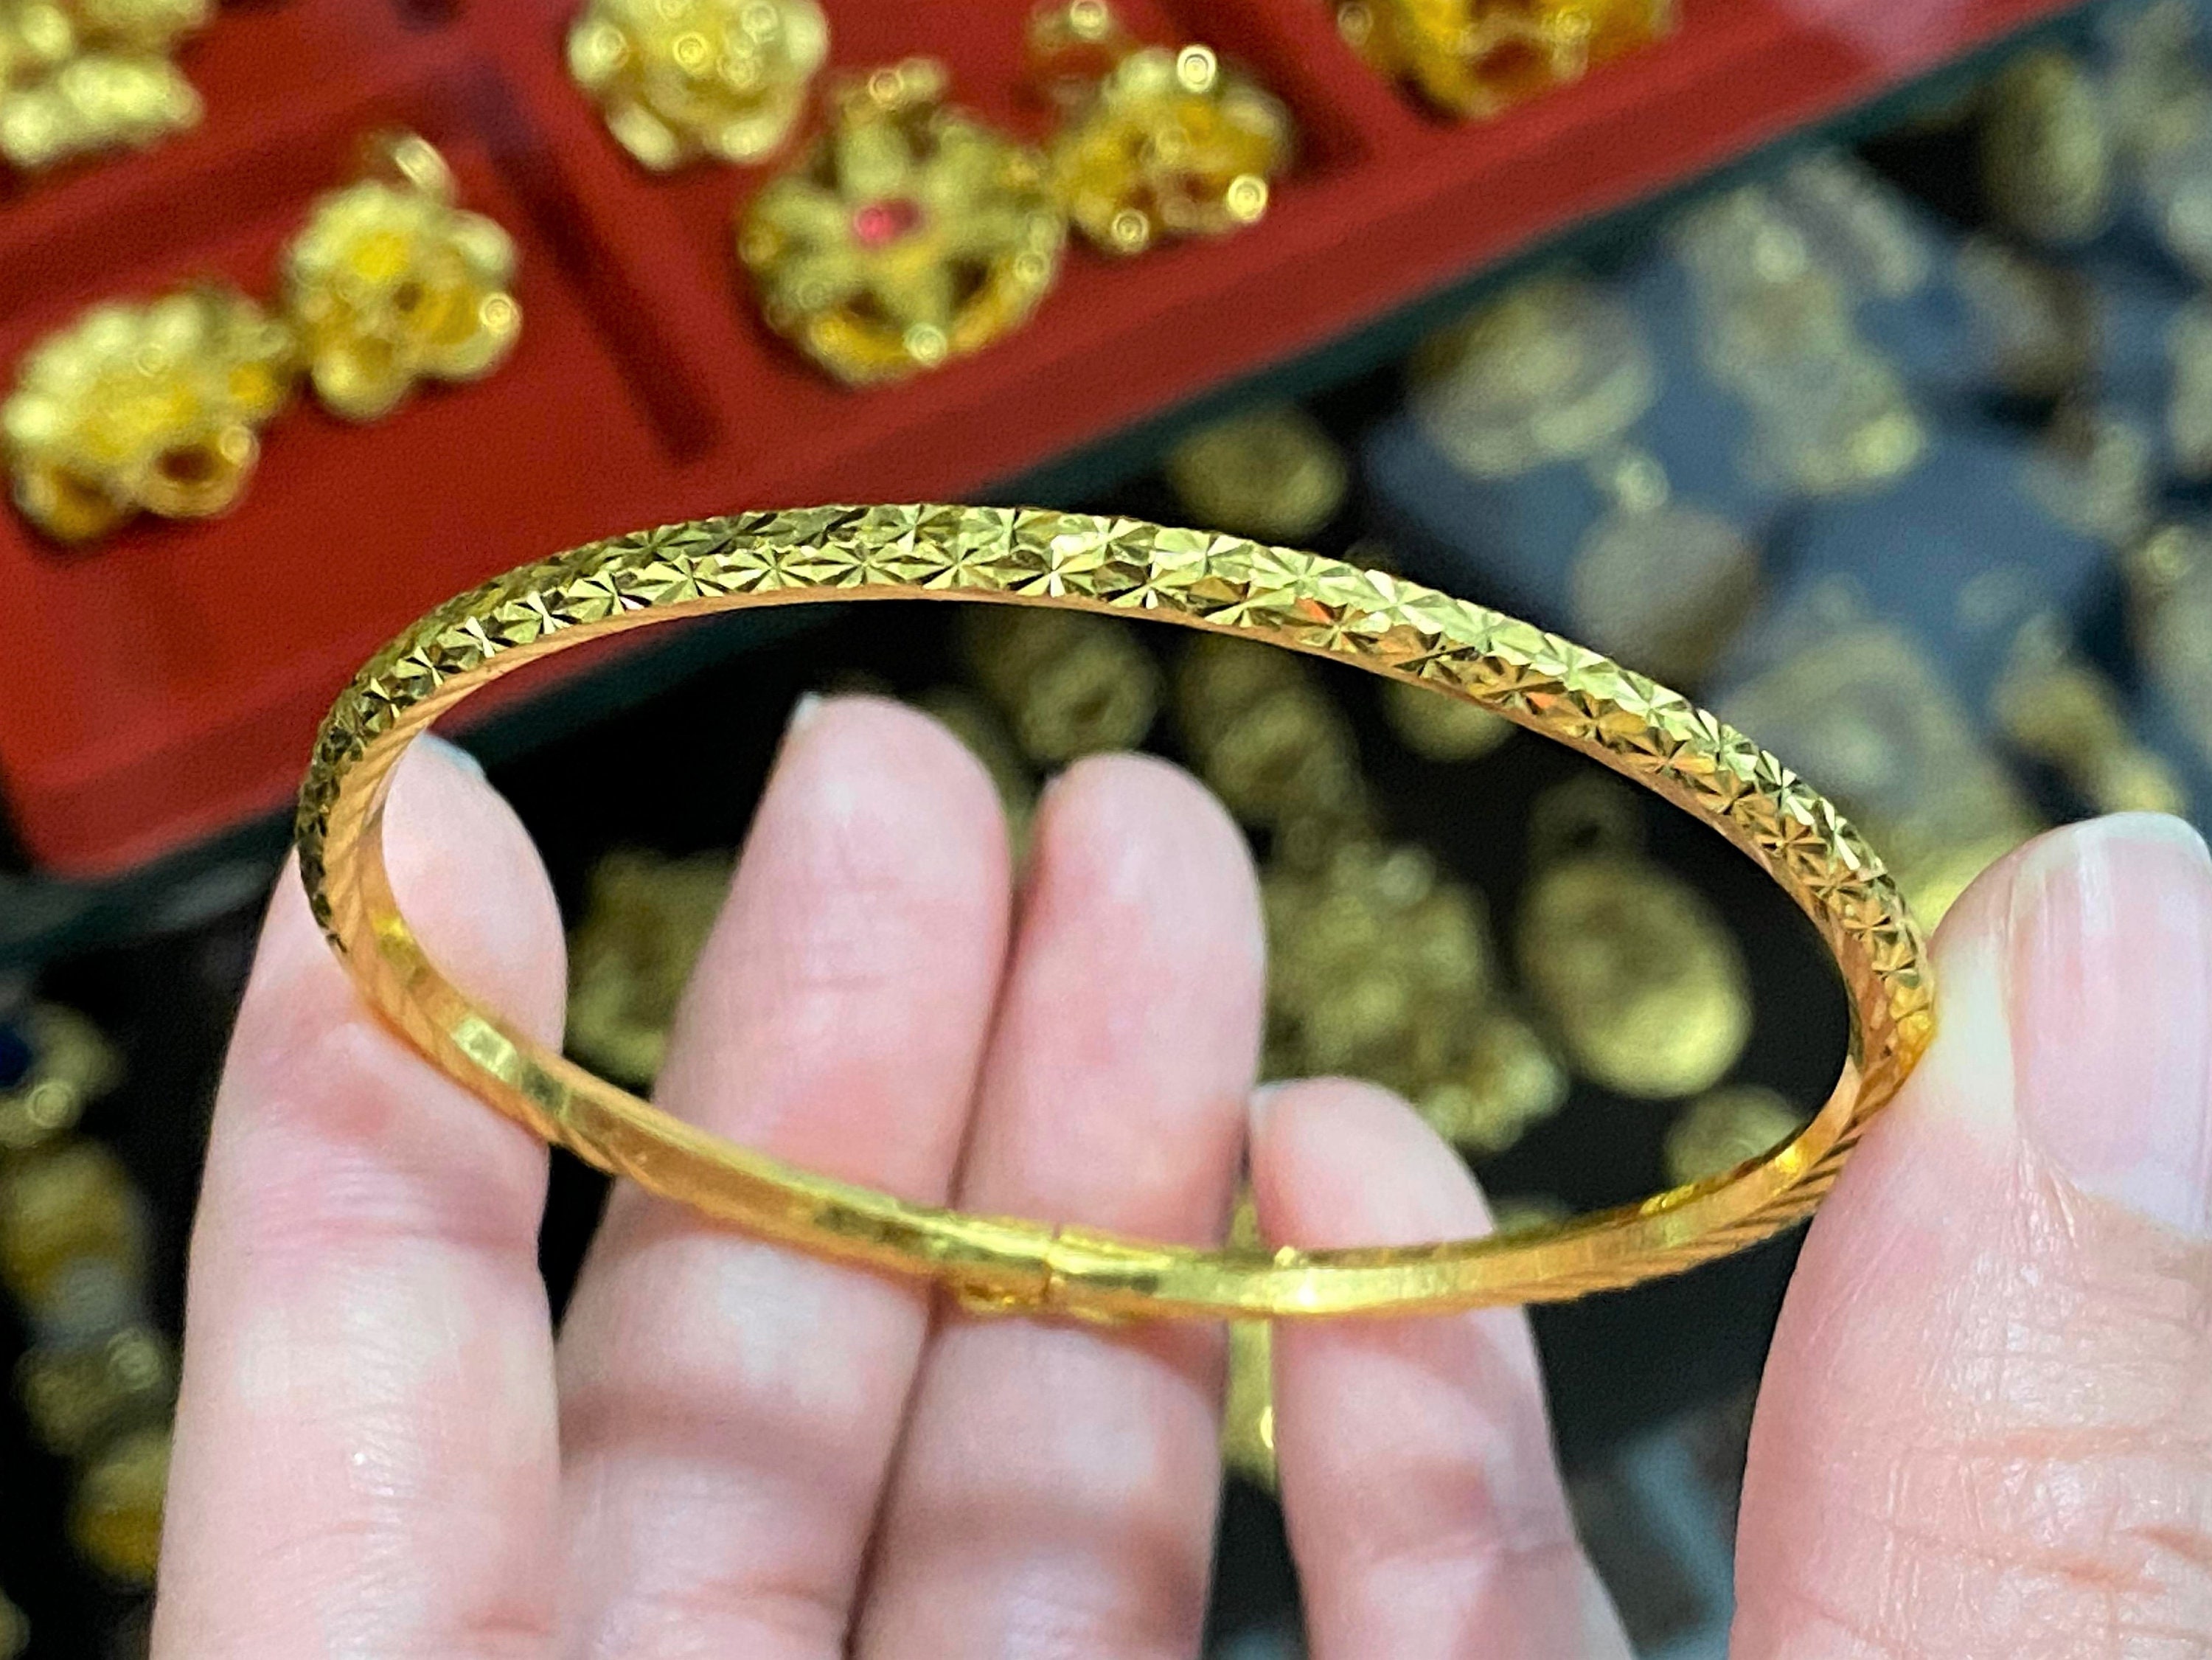 Bracelet 24 carat gold  Bracelets  Facebook Marketplace  Facebook